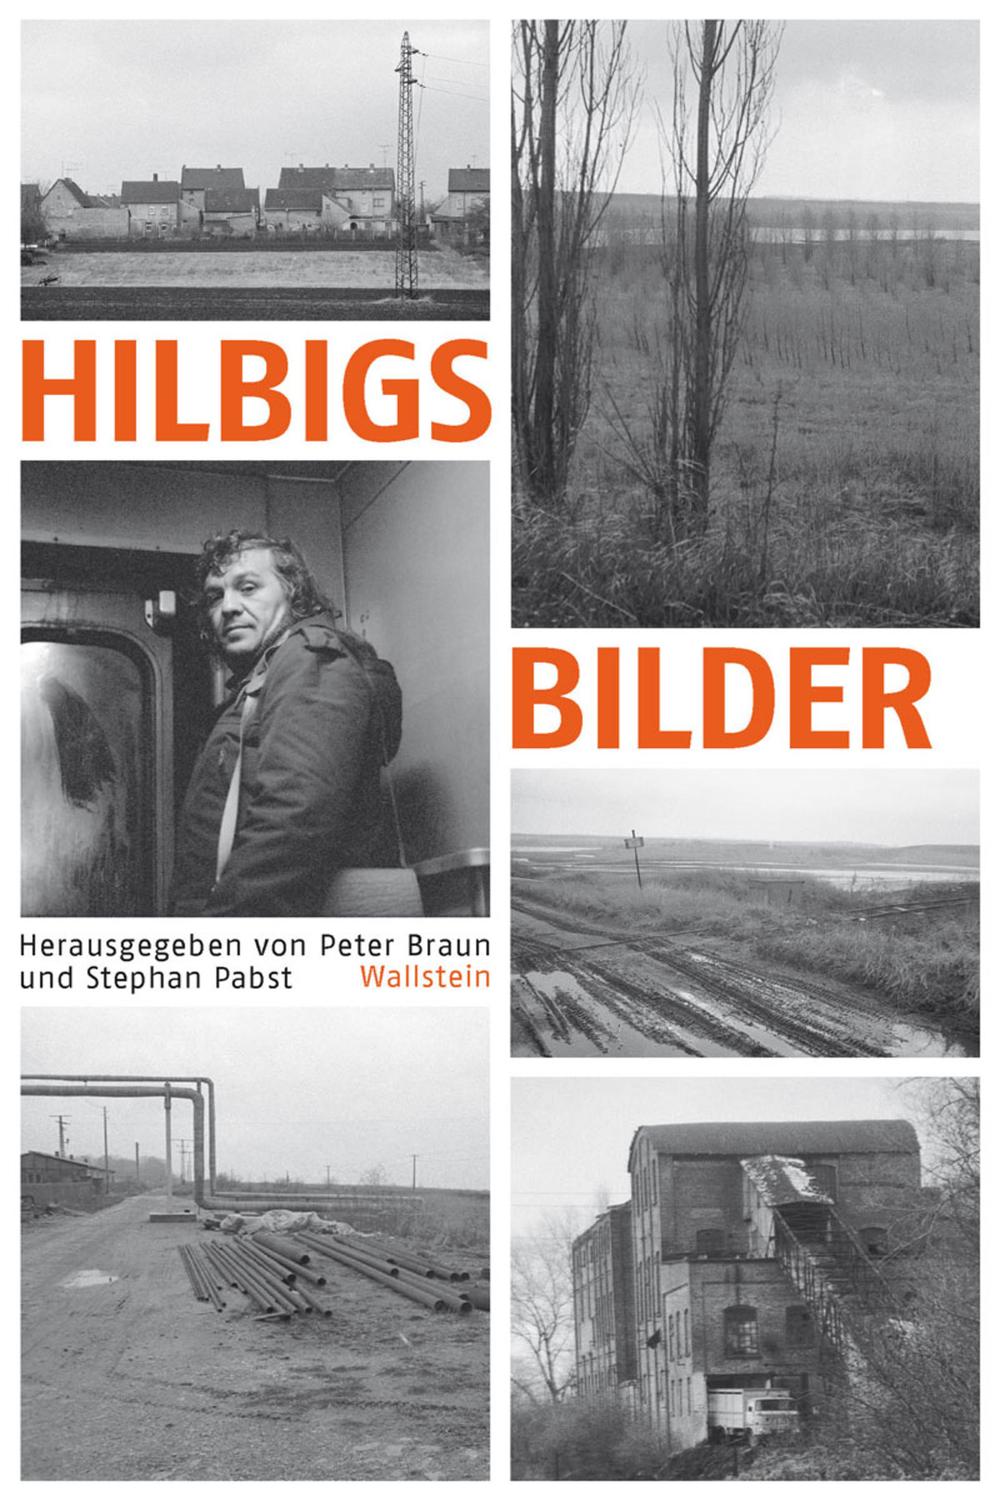 Hilbigs Bilder - Peter Braun, Stephan Pabst